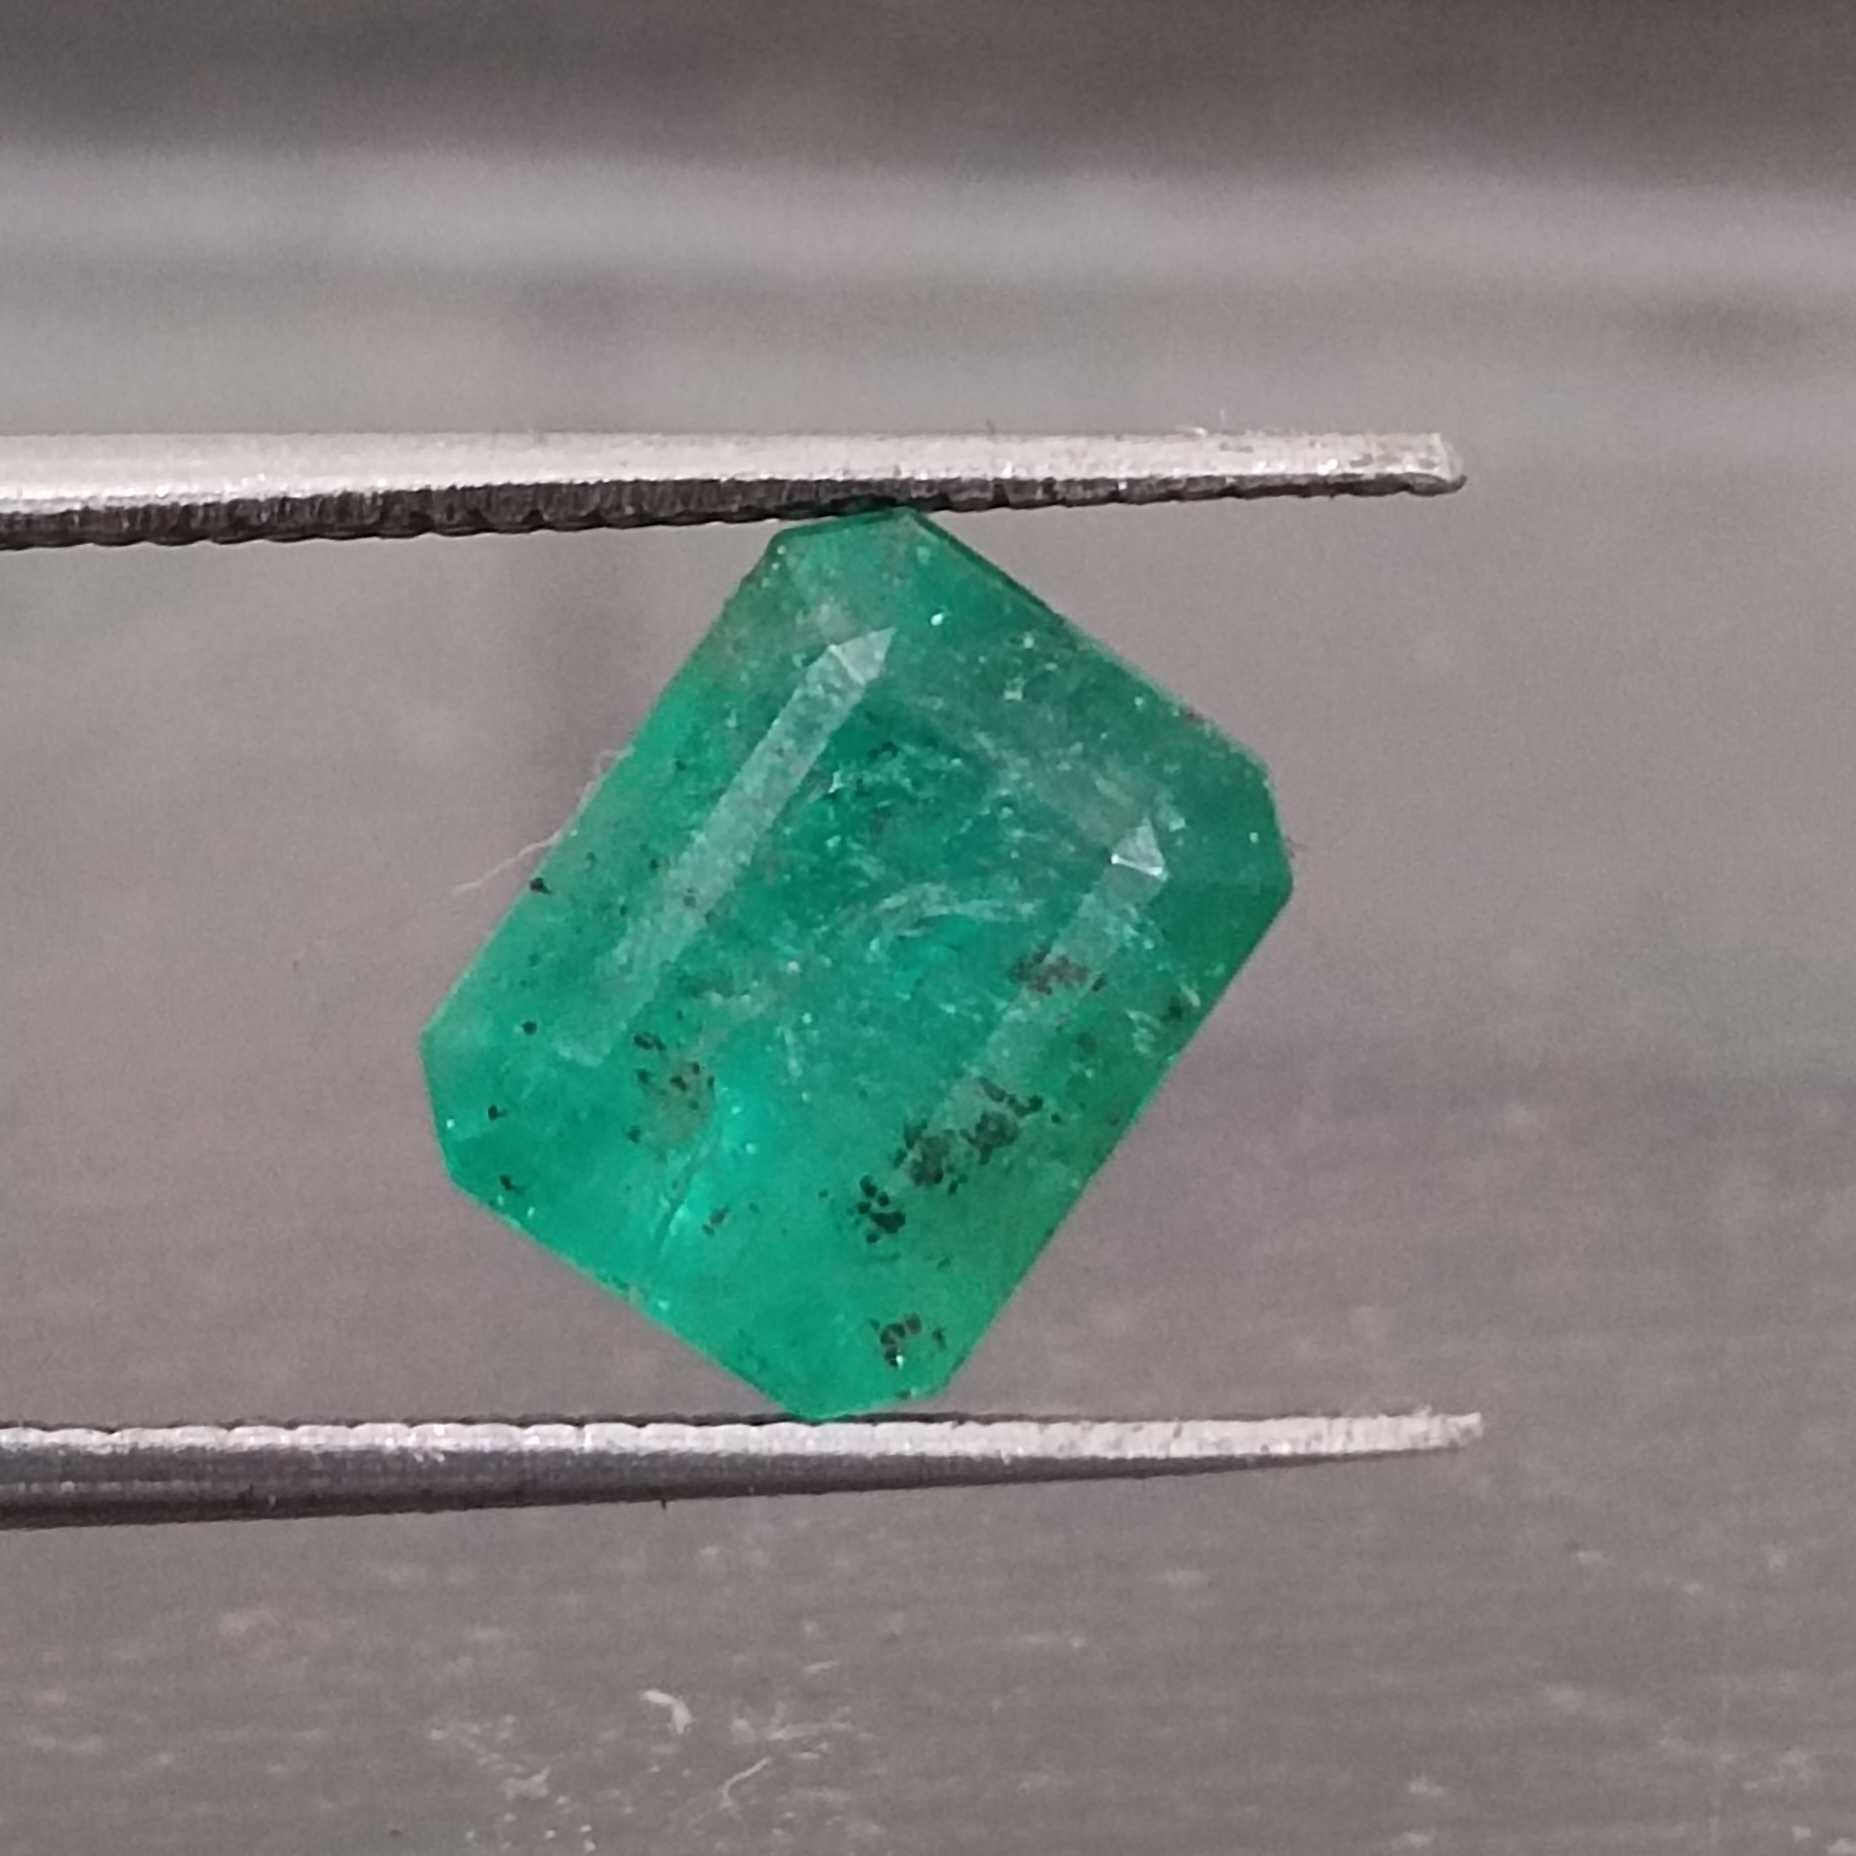 3.28ct medium vivid green emerald cut emerald/